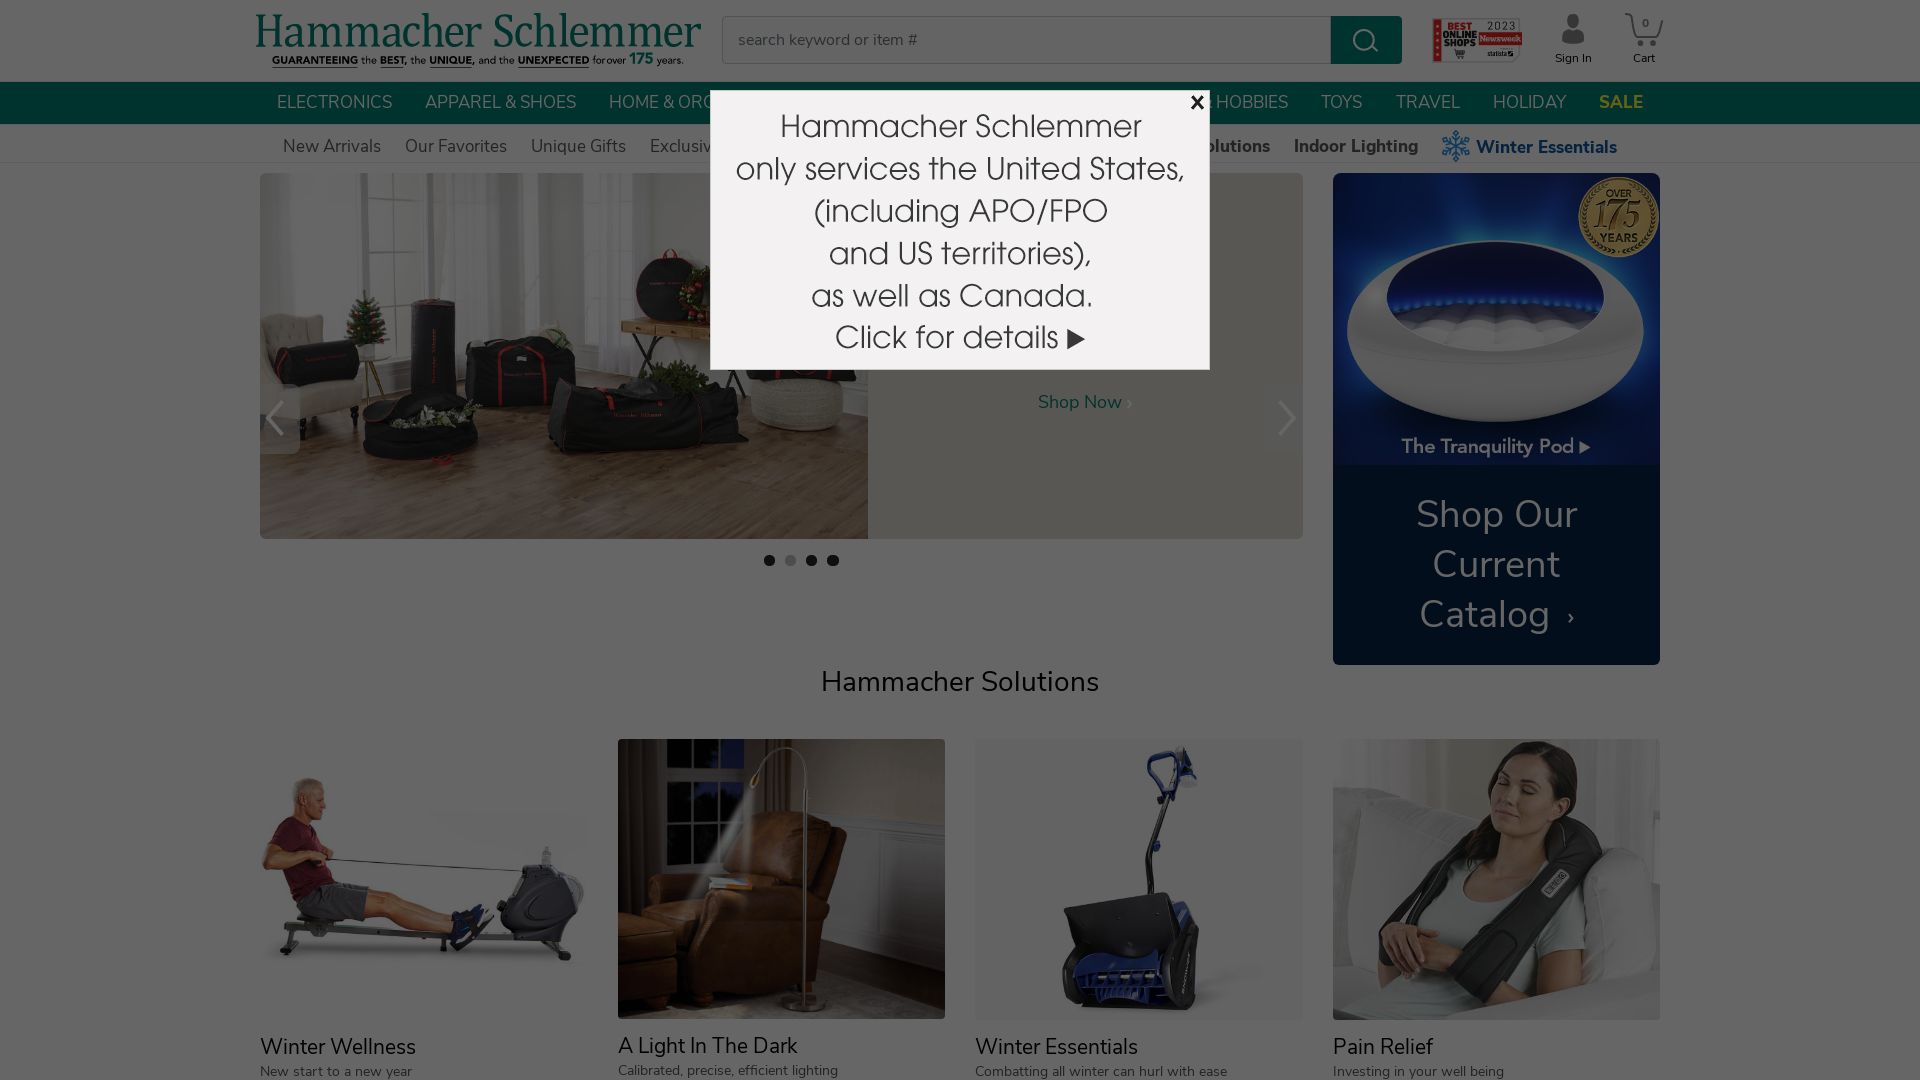 État du site web hammacher.com est   EN LIGNE